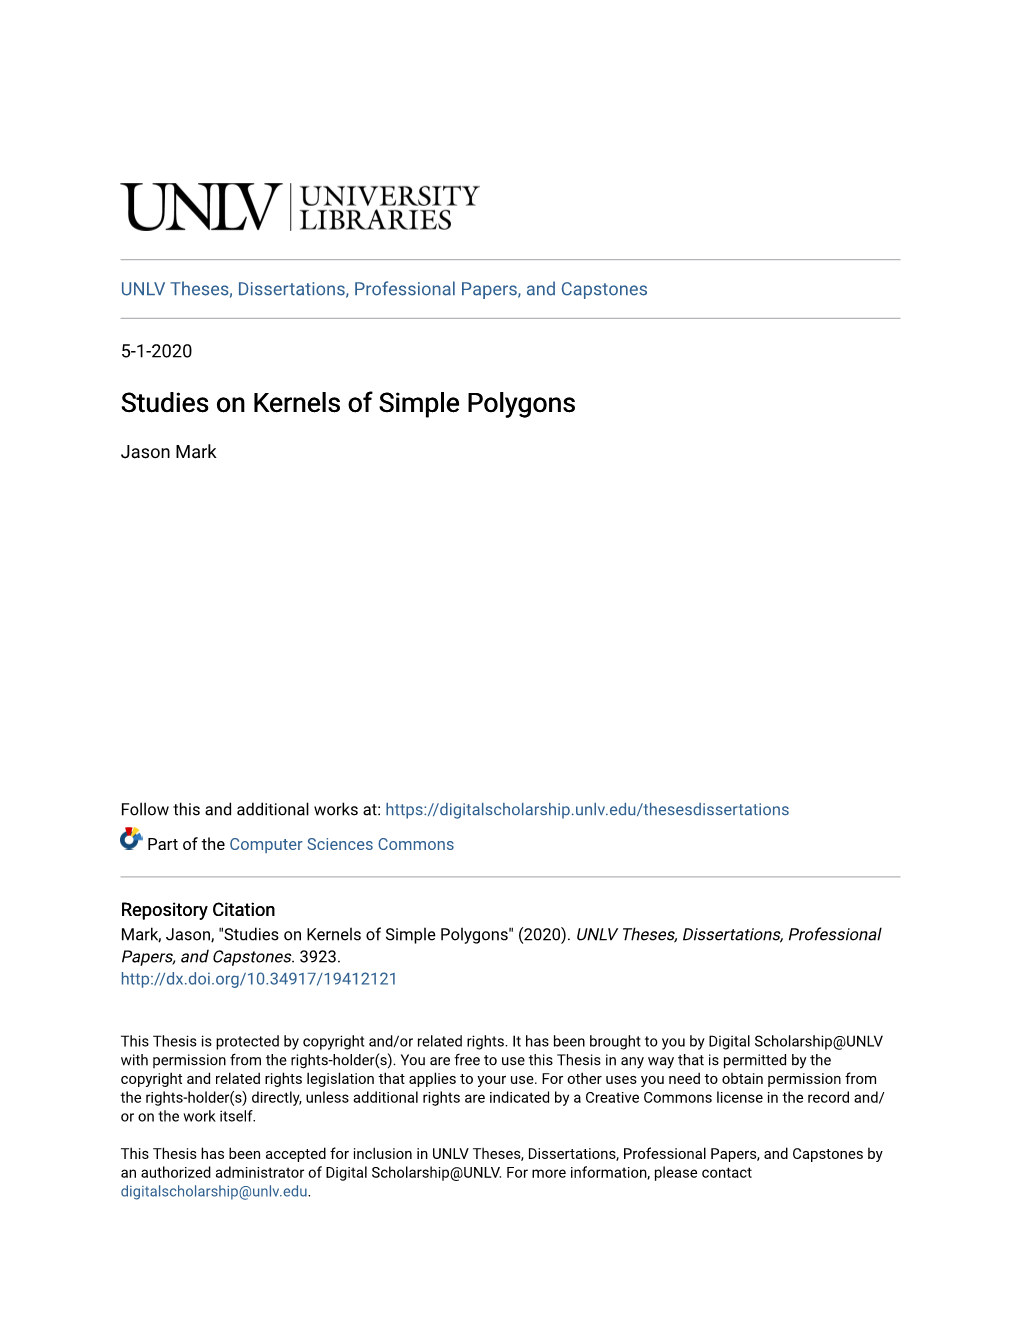 Studies on Kernels of Simple Polygons